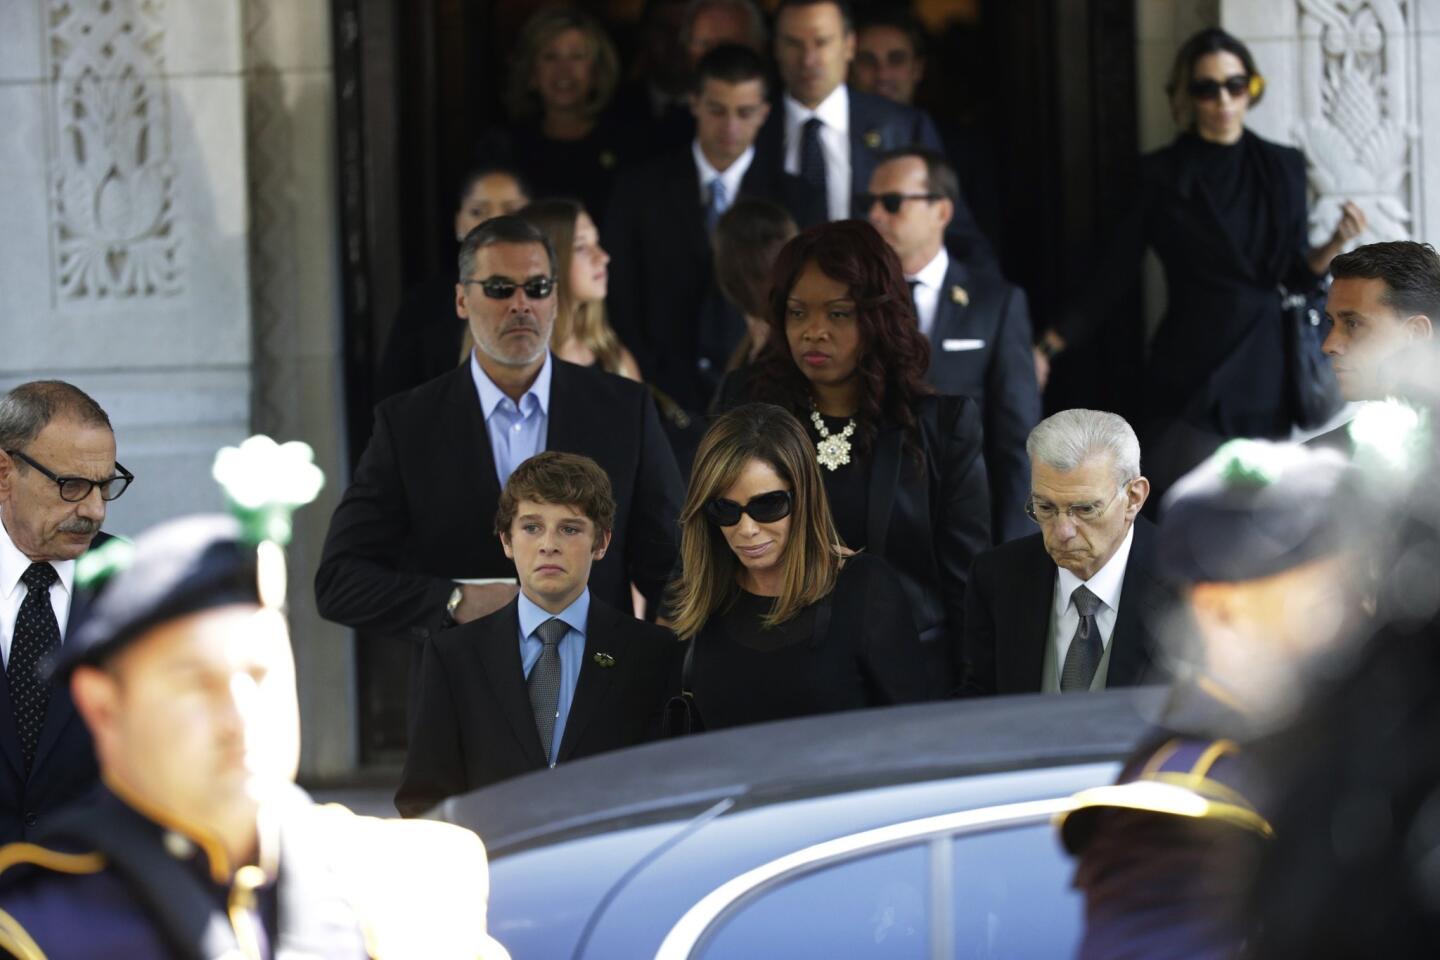 Joan Rivers' funeral